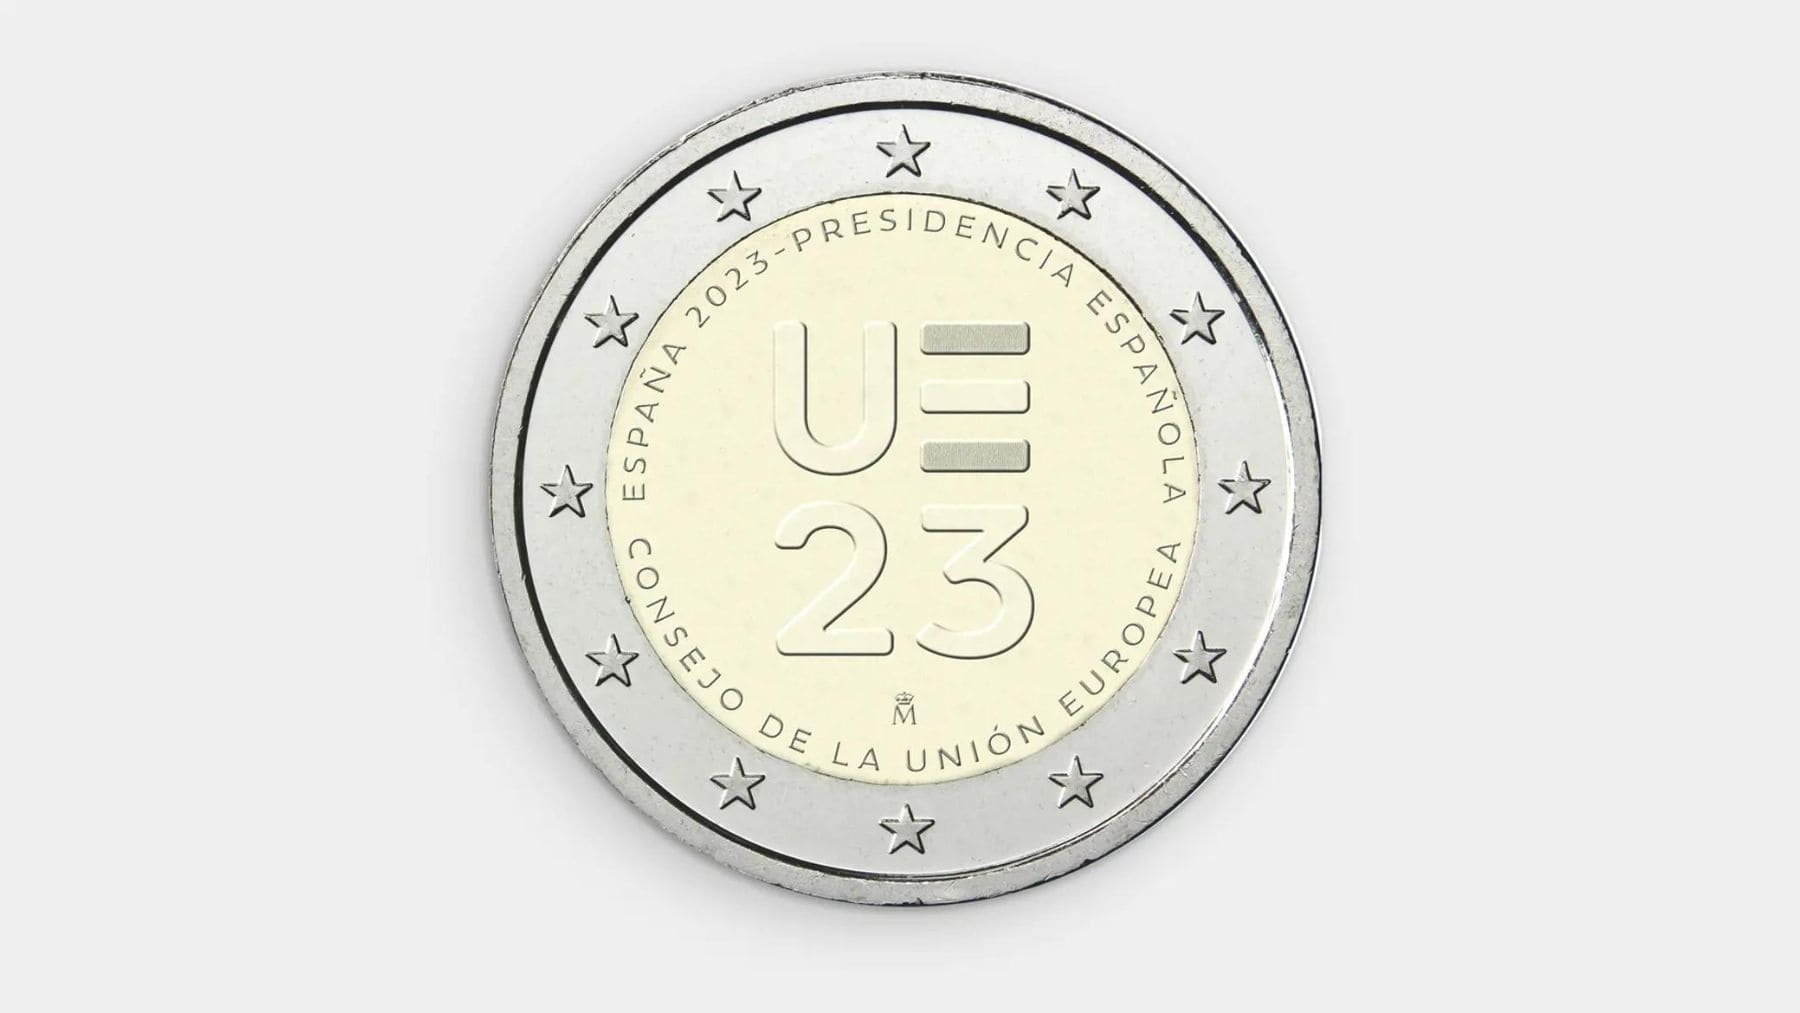 Moneda de 2 euros